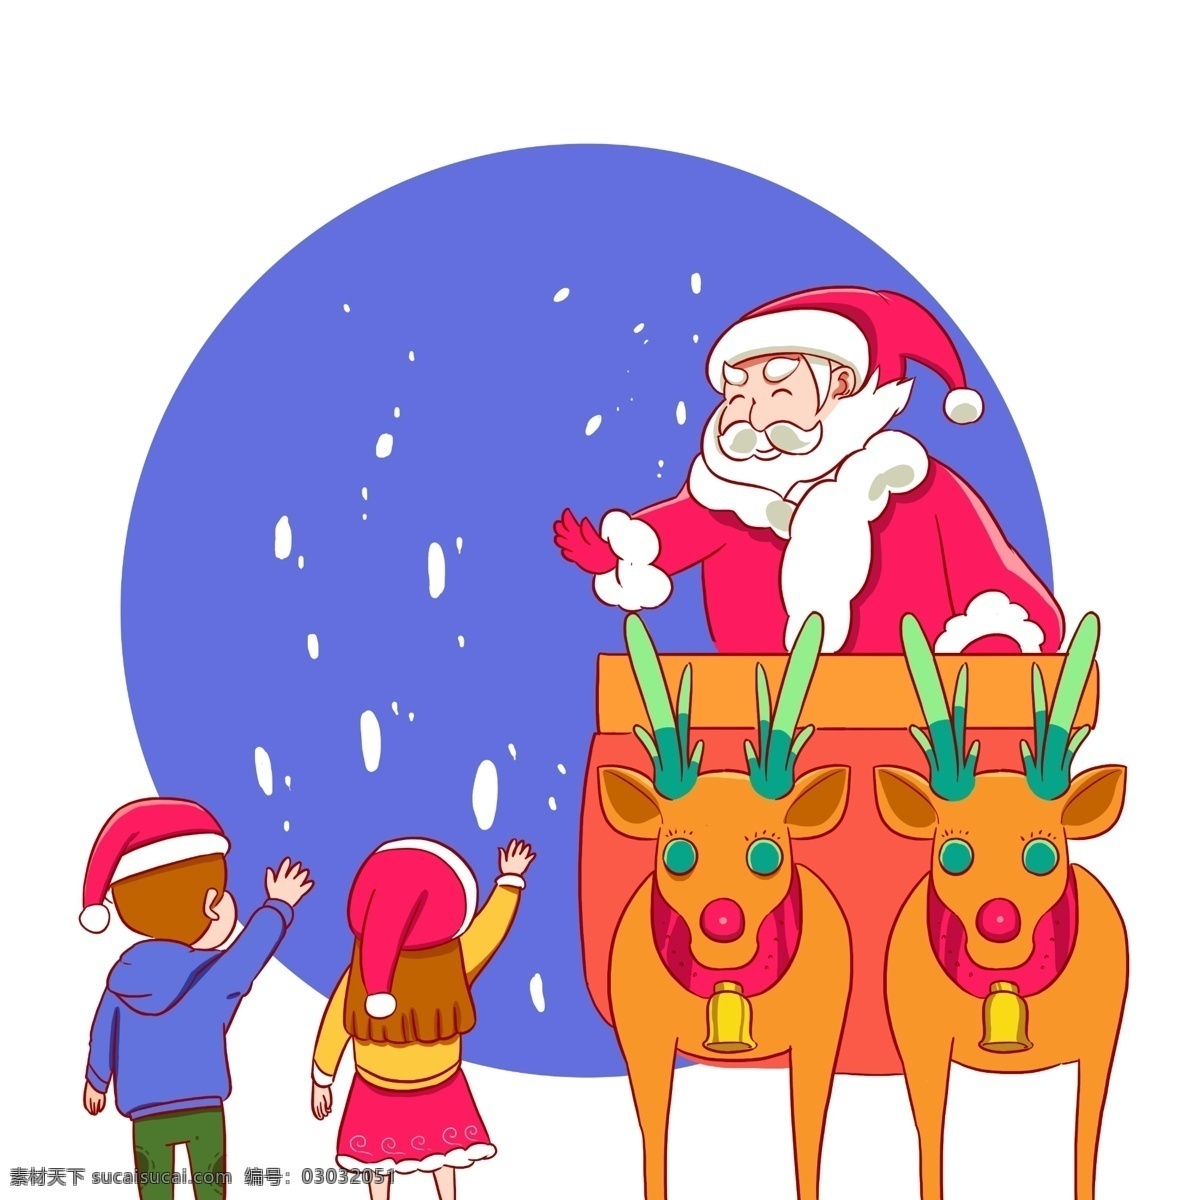 圣诞节 圣诞老人 麋鹿 挥手 告别 冬季 冬天 装饰 圣诞 拉雪橇 圣诞礼物 传统节日 送礼物 卡通形象